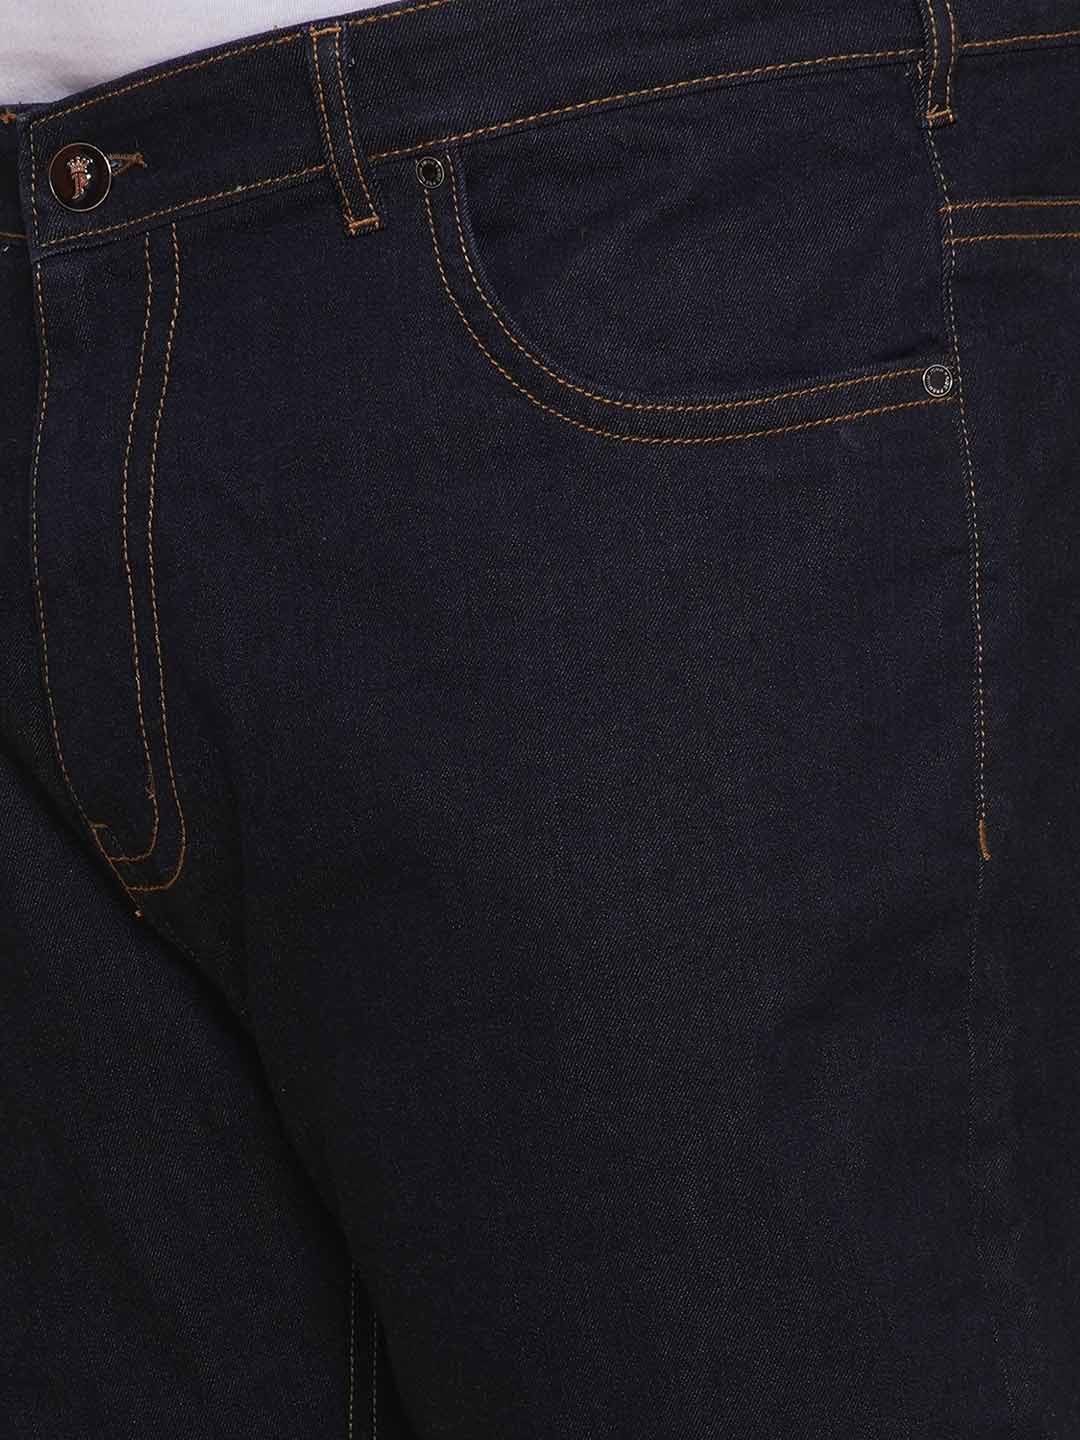 bottomwear/jeans/PJPJ60101/pjpj60101-2.jpg